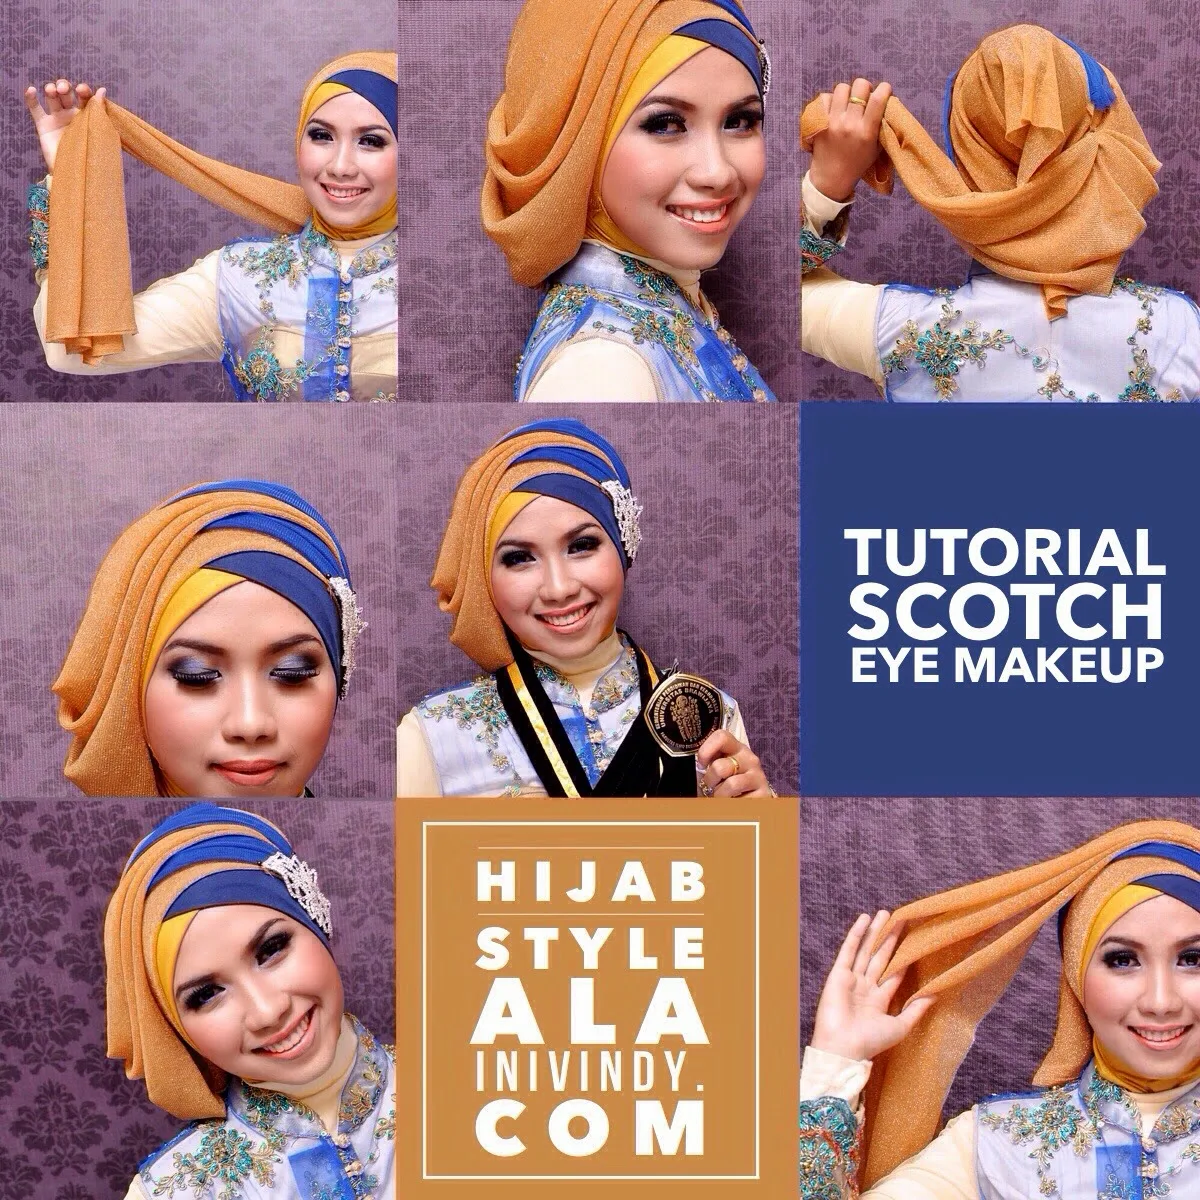 Ini Vindy Yang Ajaib Tutorial Makeup Natural Dan Hijab Style Untuk